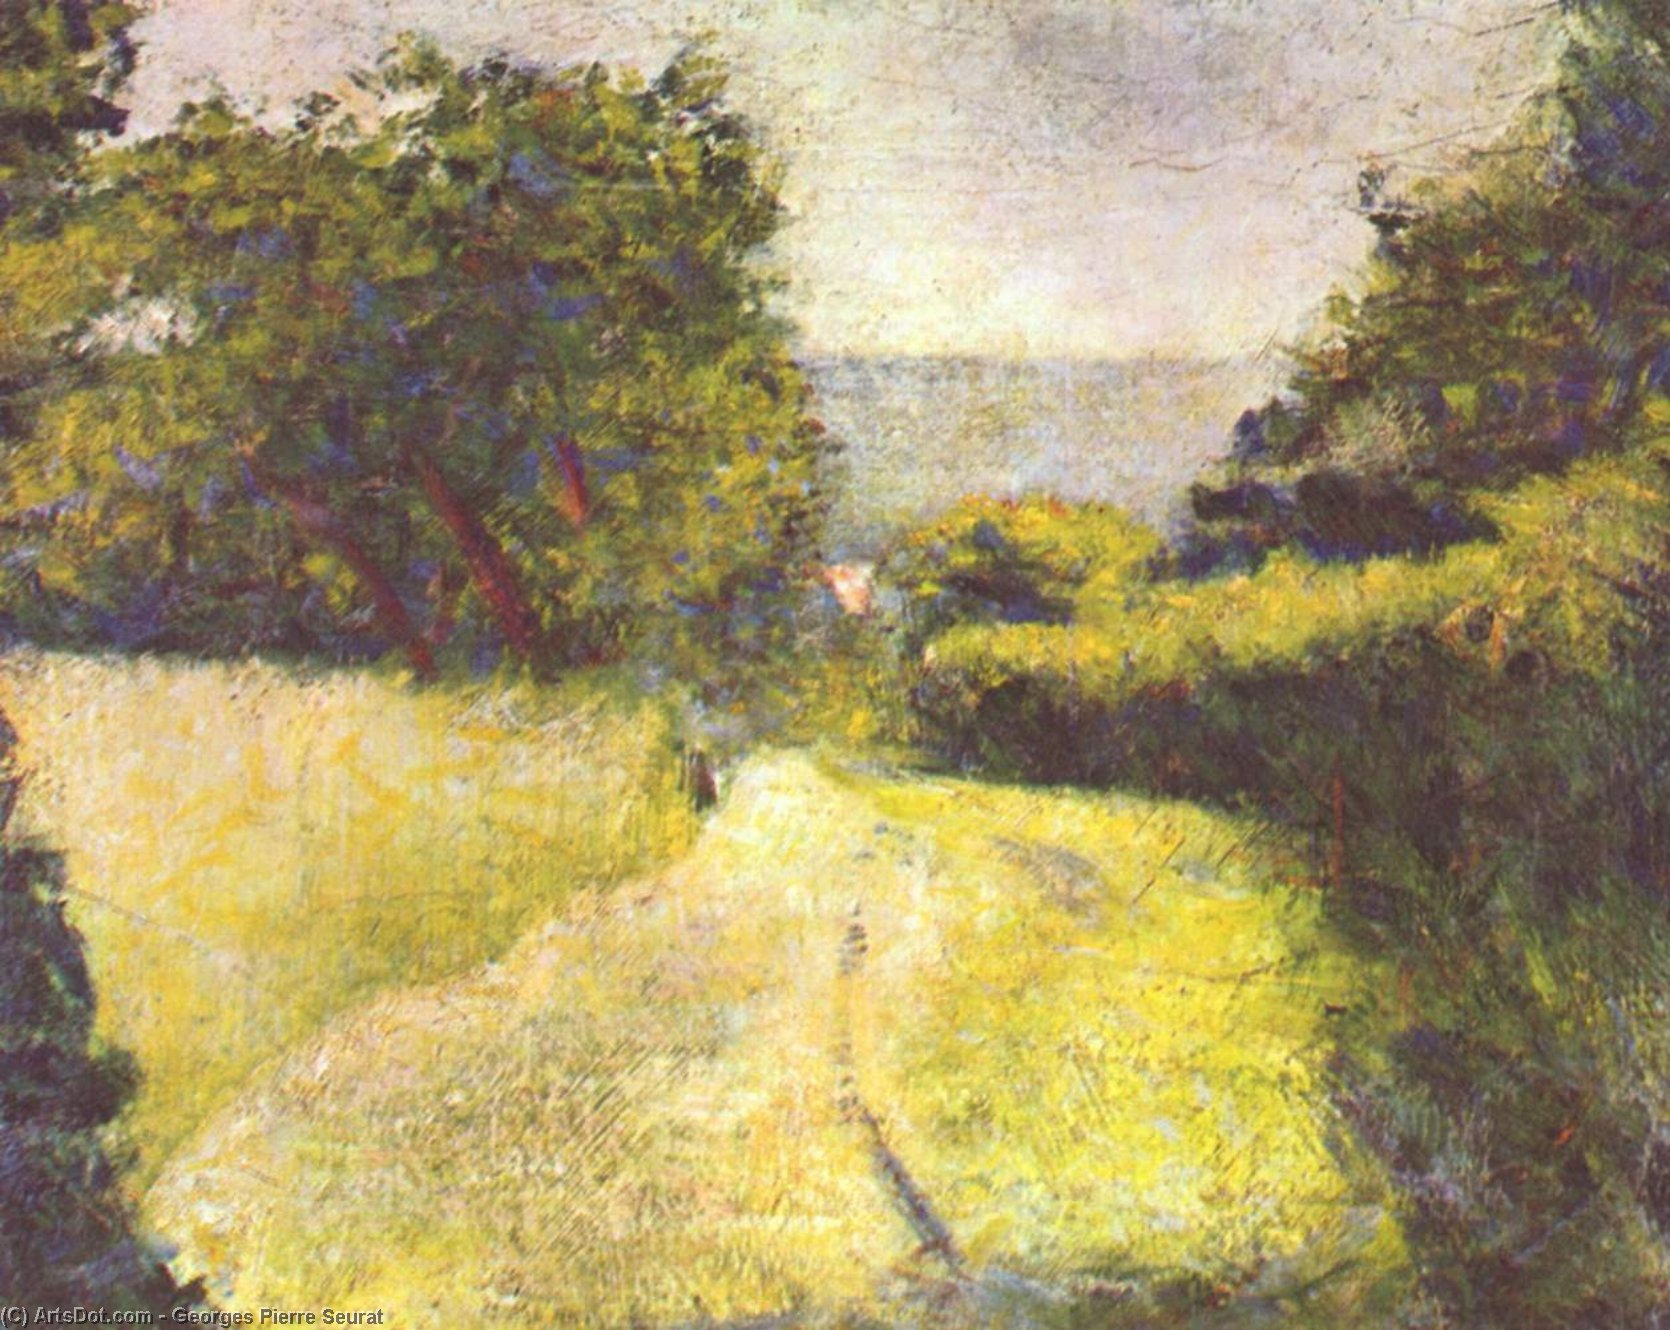 WikiOO.org - אנציקלופדיה לאמנויות יפות - ציור, יצירות אמנות Georges Pierre Seurat - The Hollow Way